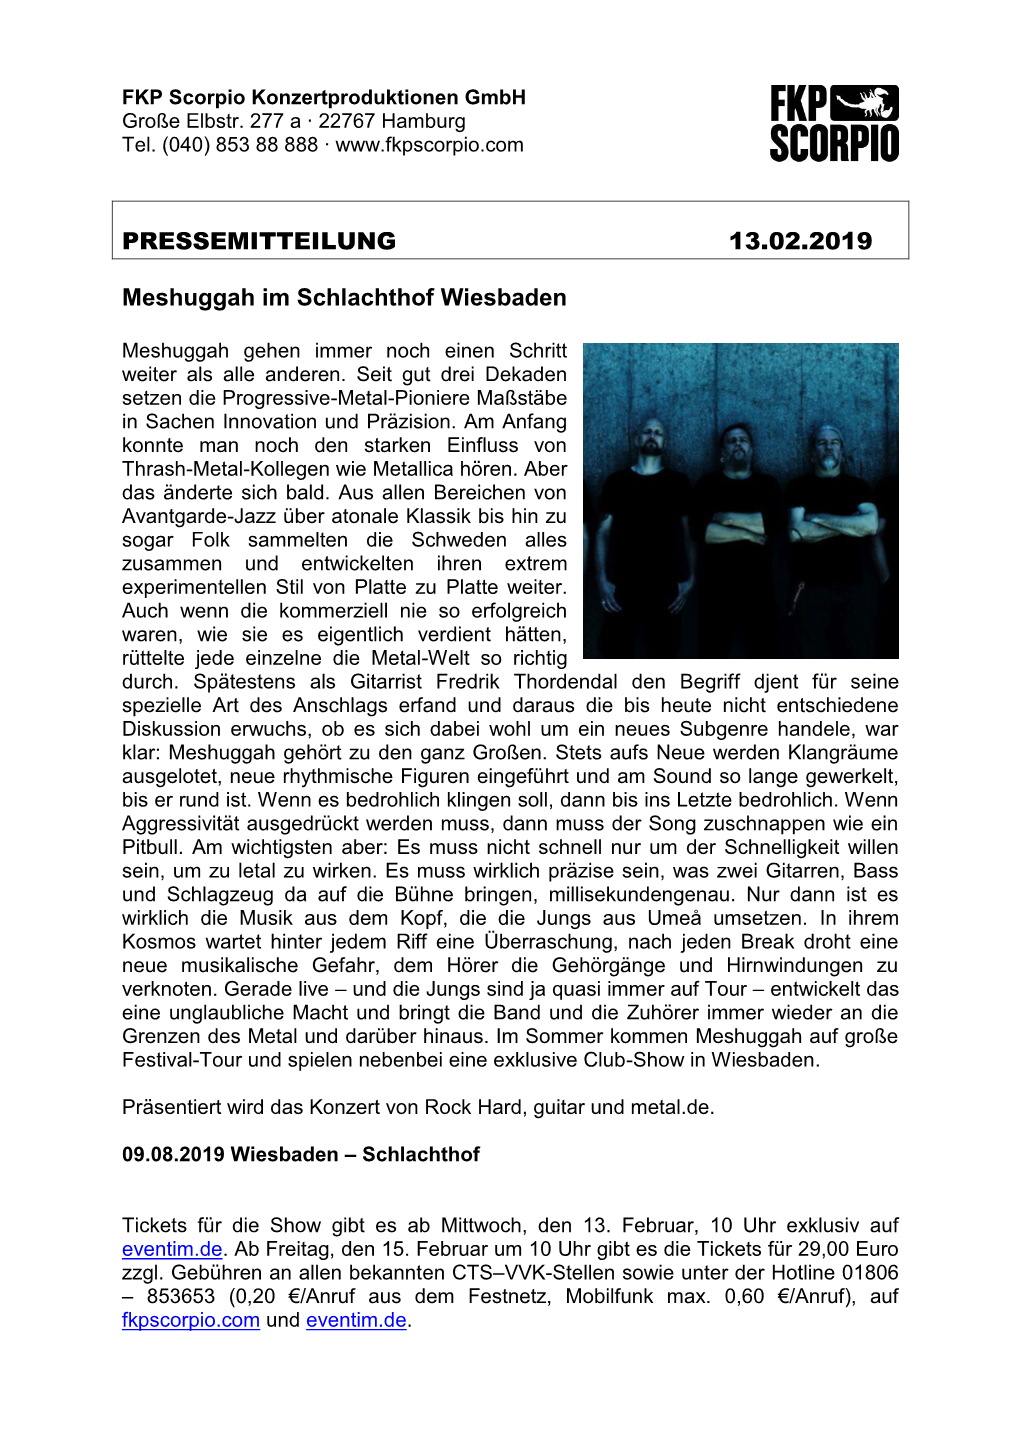 PRESSEMITTEILUNG 13.02.2019 Meshuggah Im